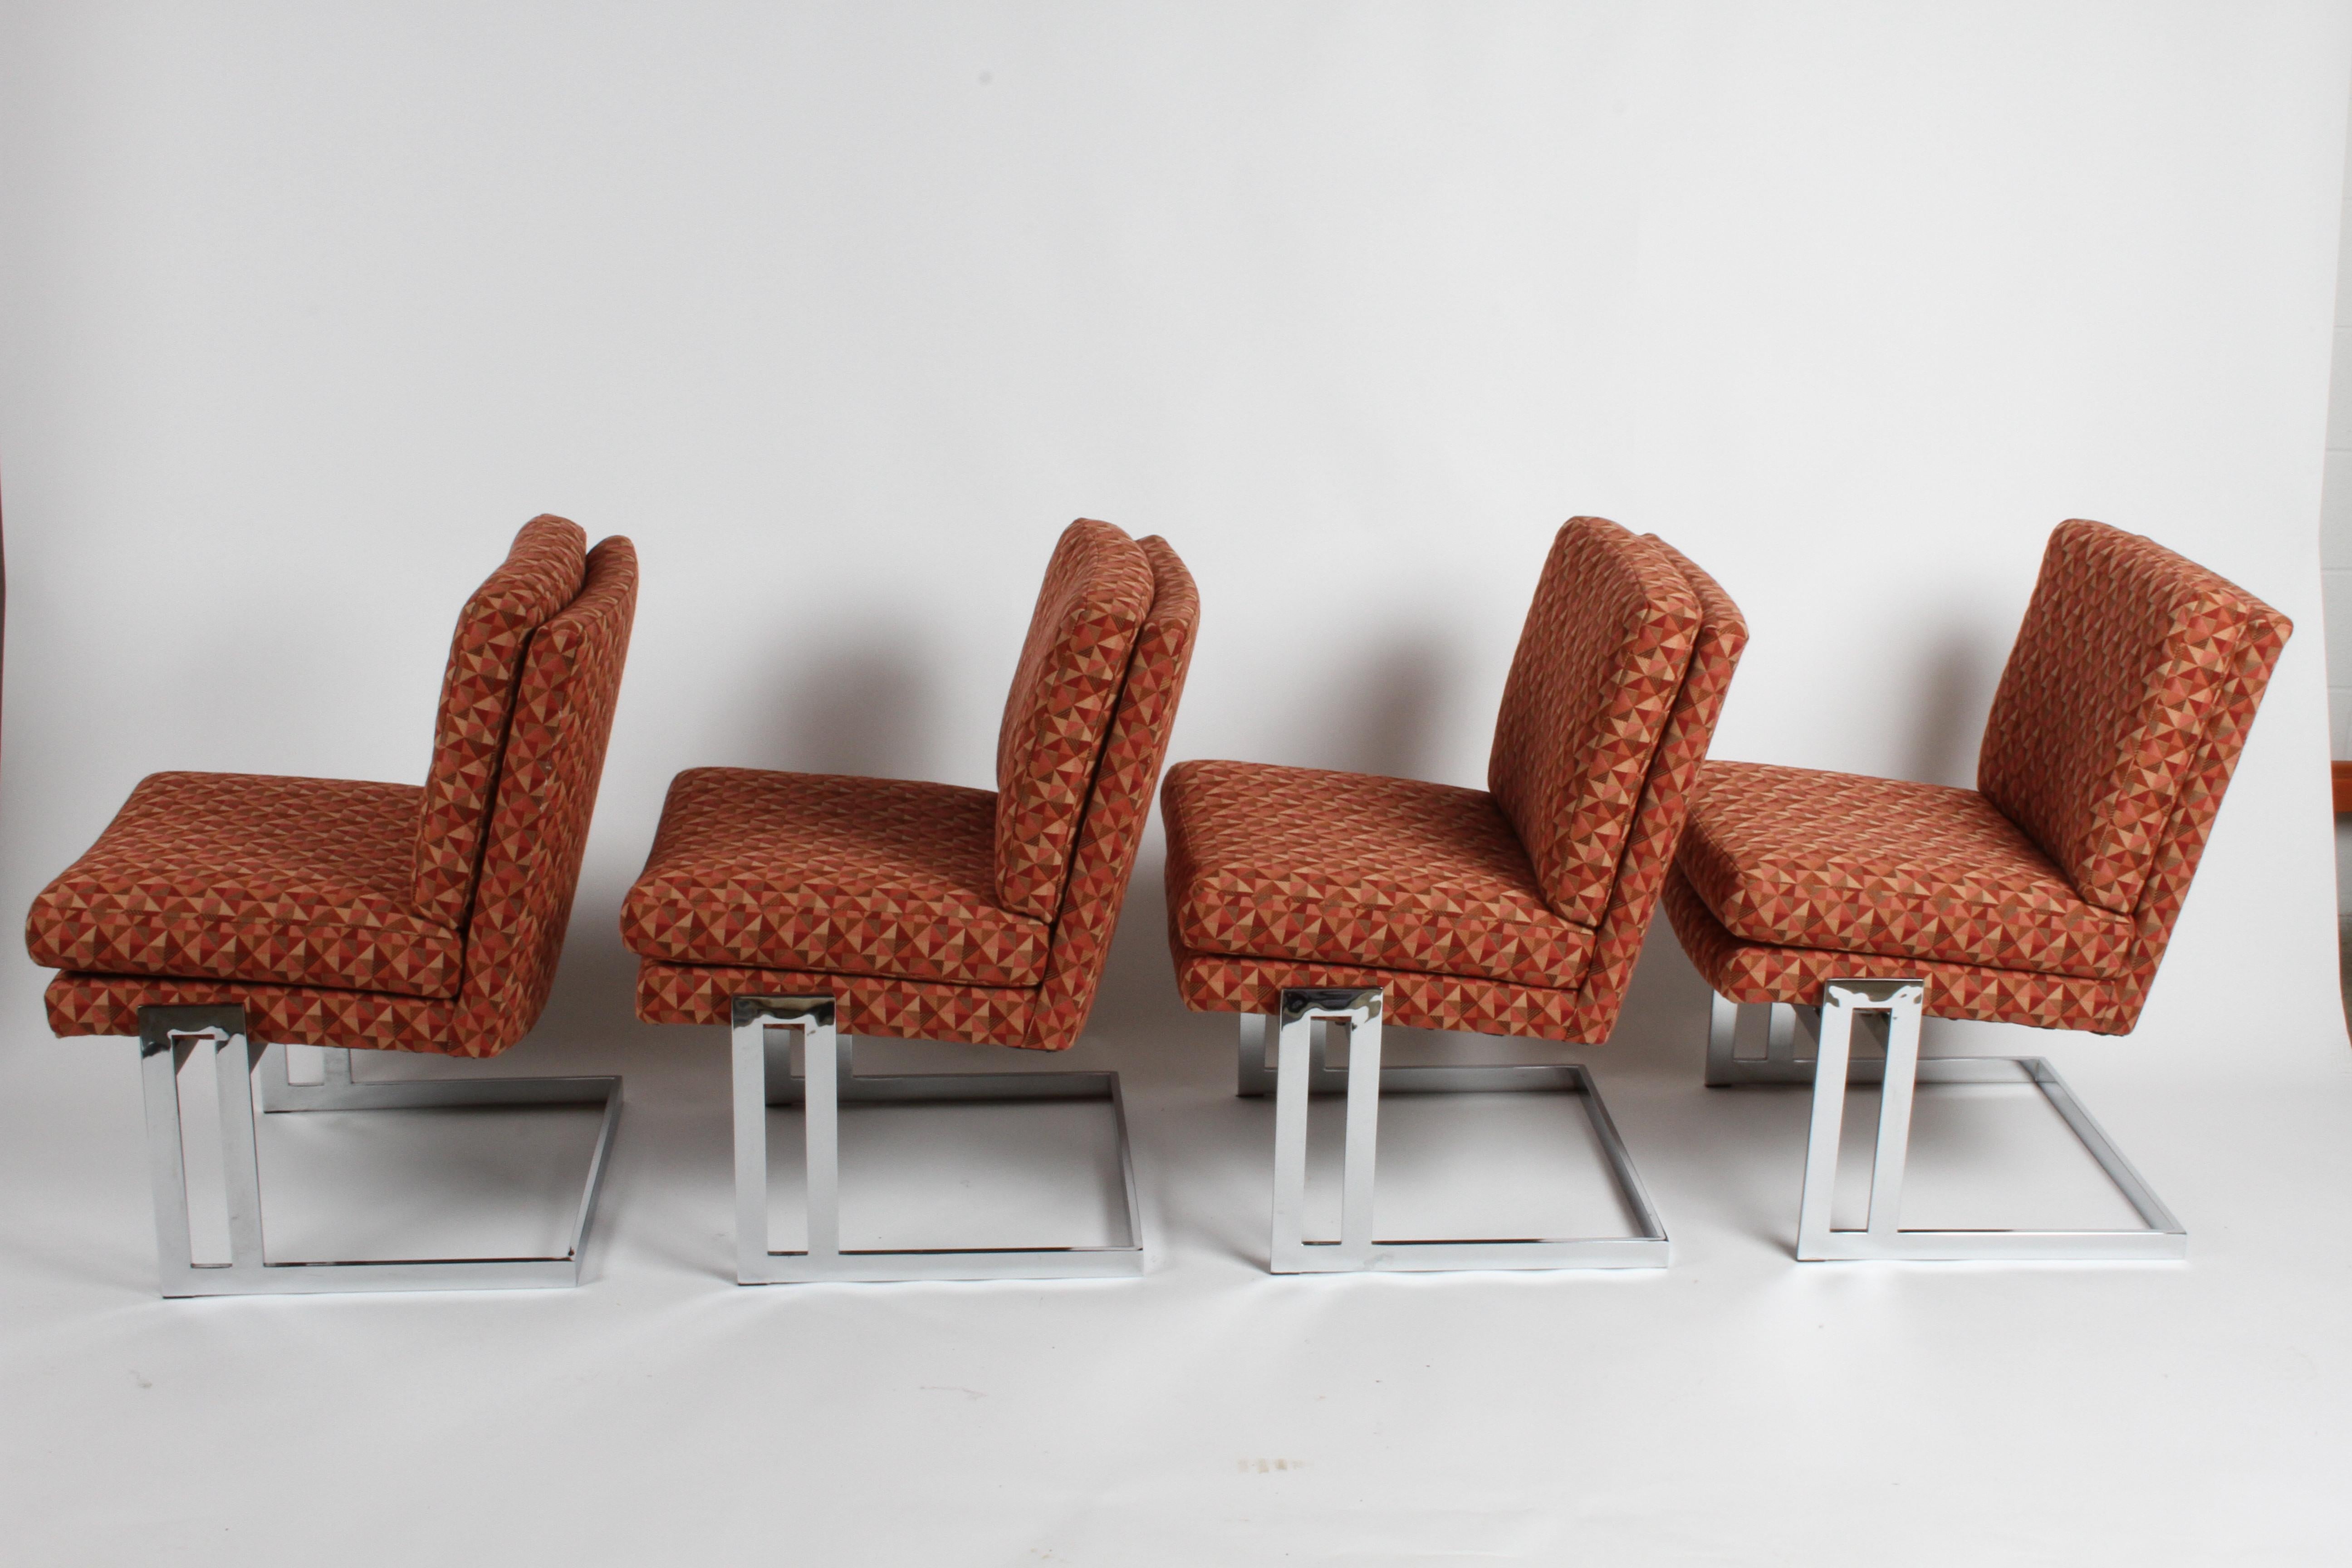 Satz von vier Milo Baughman für Thayer-Coggin freischwingende armlose Esszimmerstühle, Modell #1060 mit verchromten Gestellen. Diese Stühle wurden um einen von Leo Rosen für Pace entworfenen Spieltisch herum verwendet. Der ursprüngliche geometrische